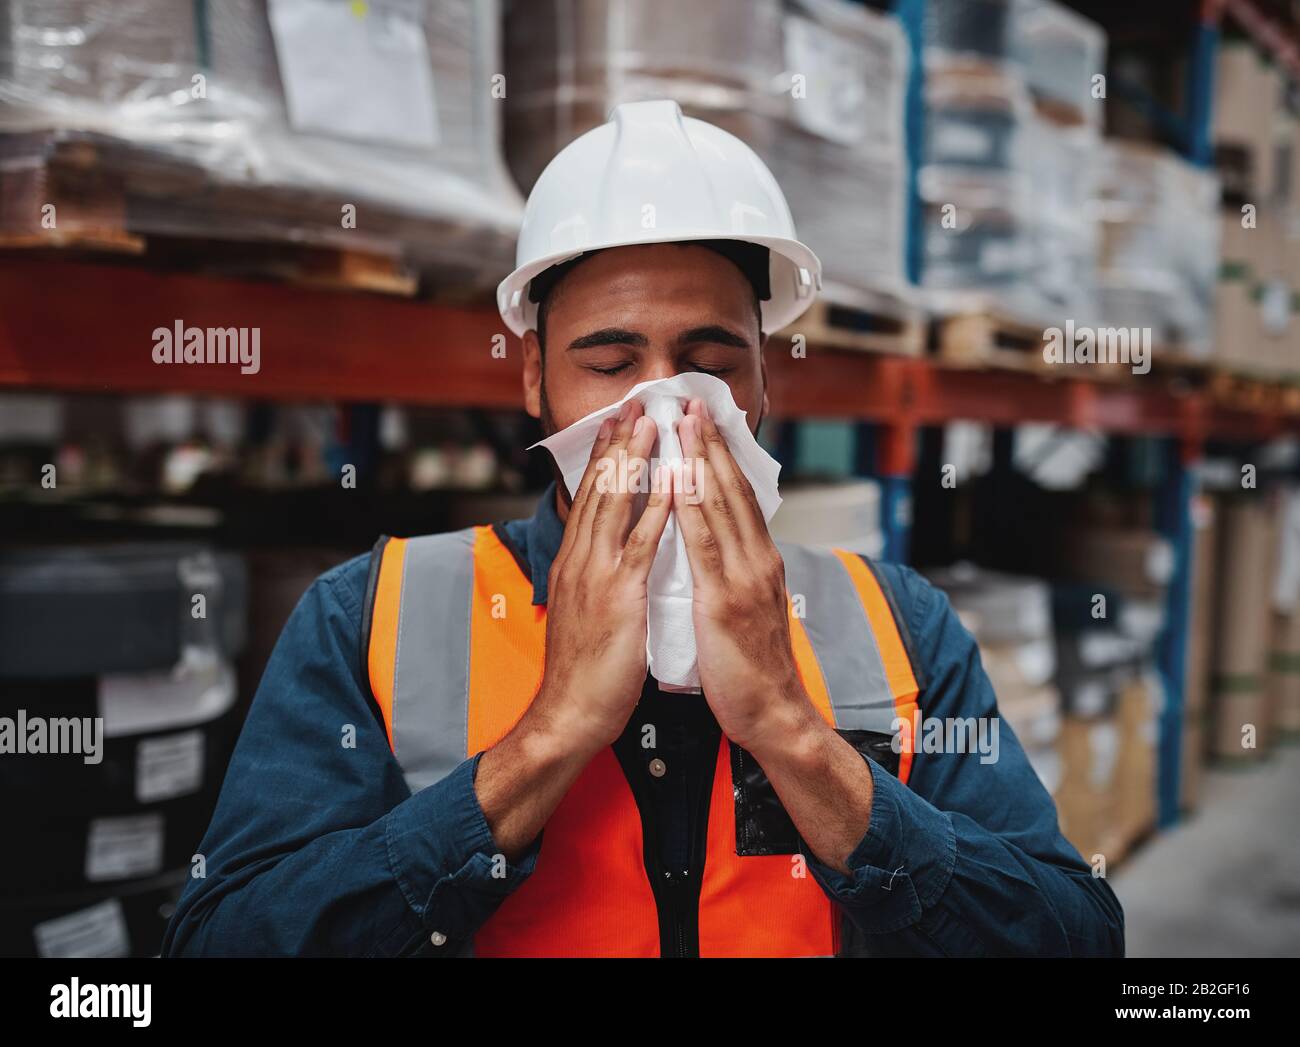 Joven gerente africano tosiendo y sintiéndose enfermo mientras cubría la boca con pañuelo en el almacén Foto de stock